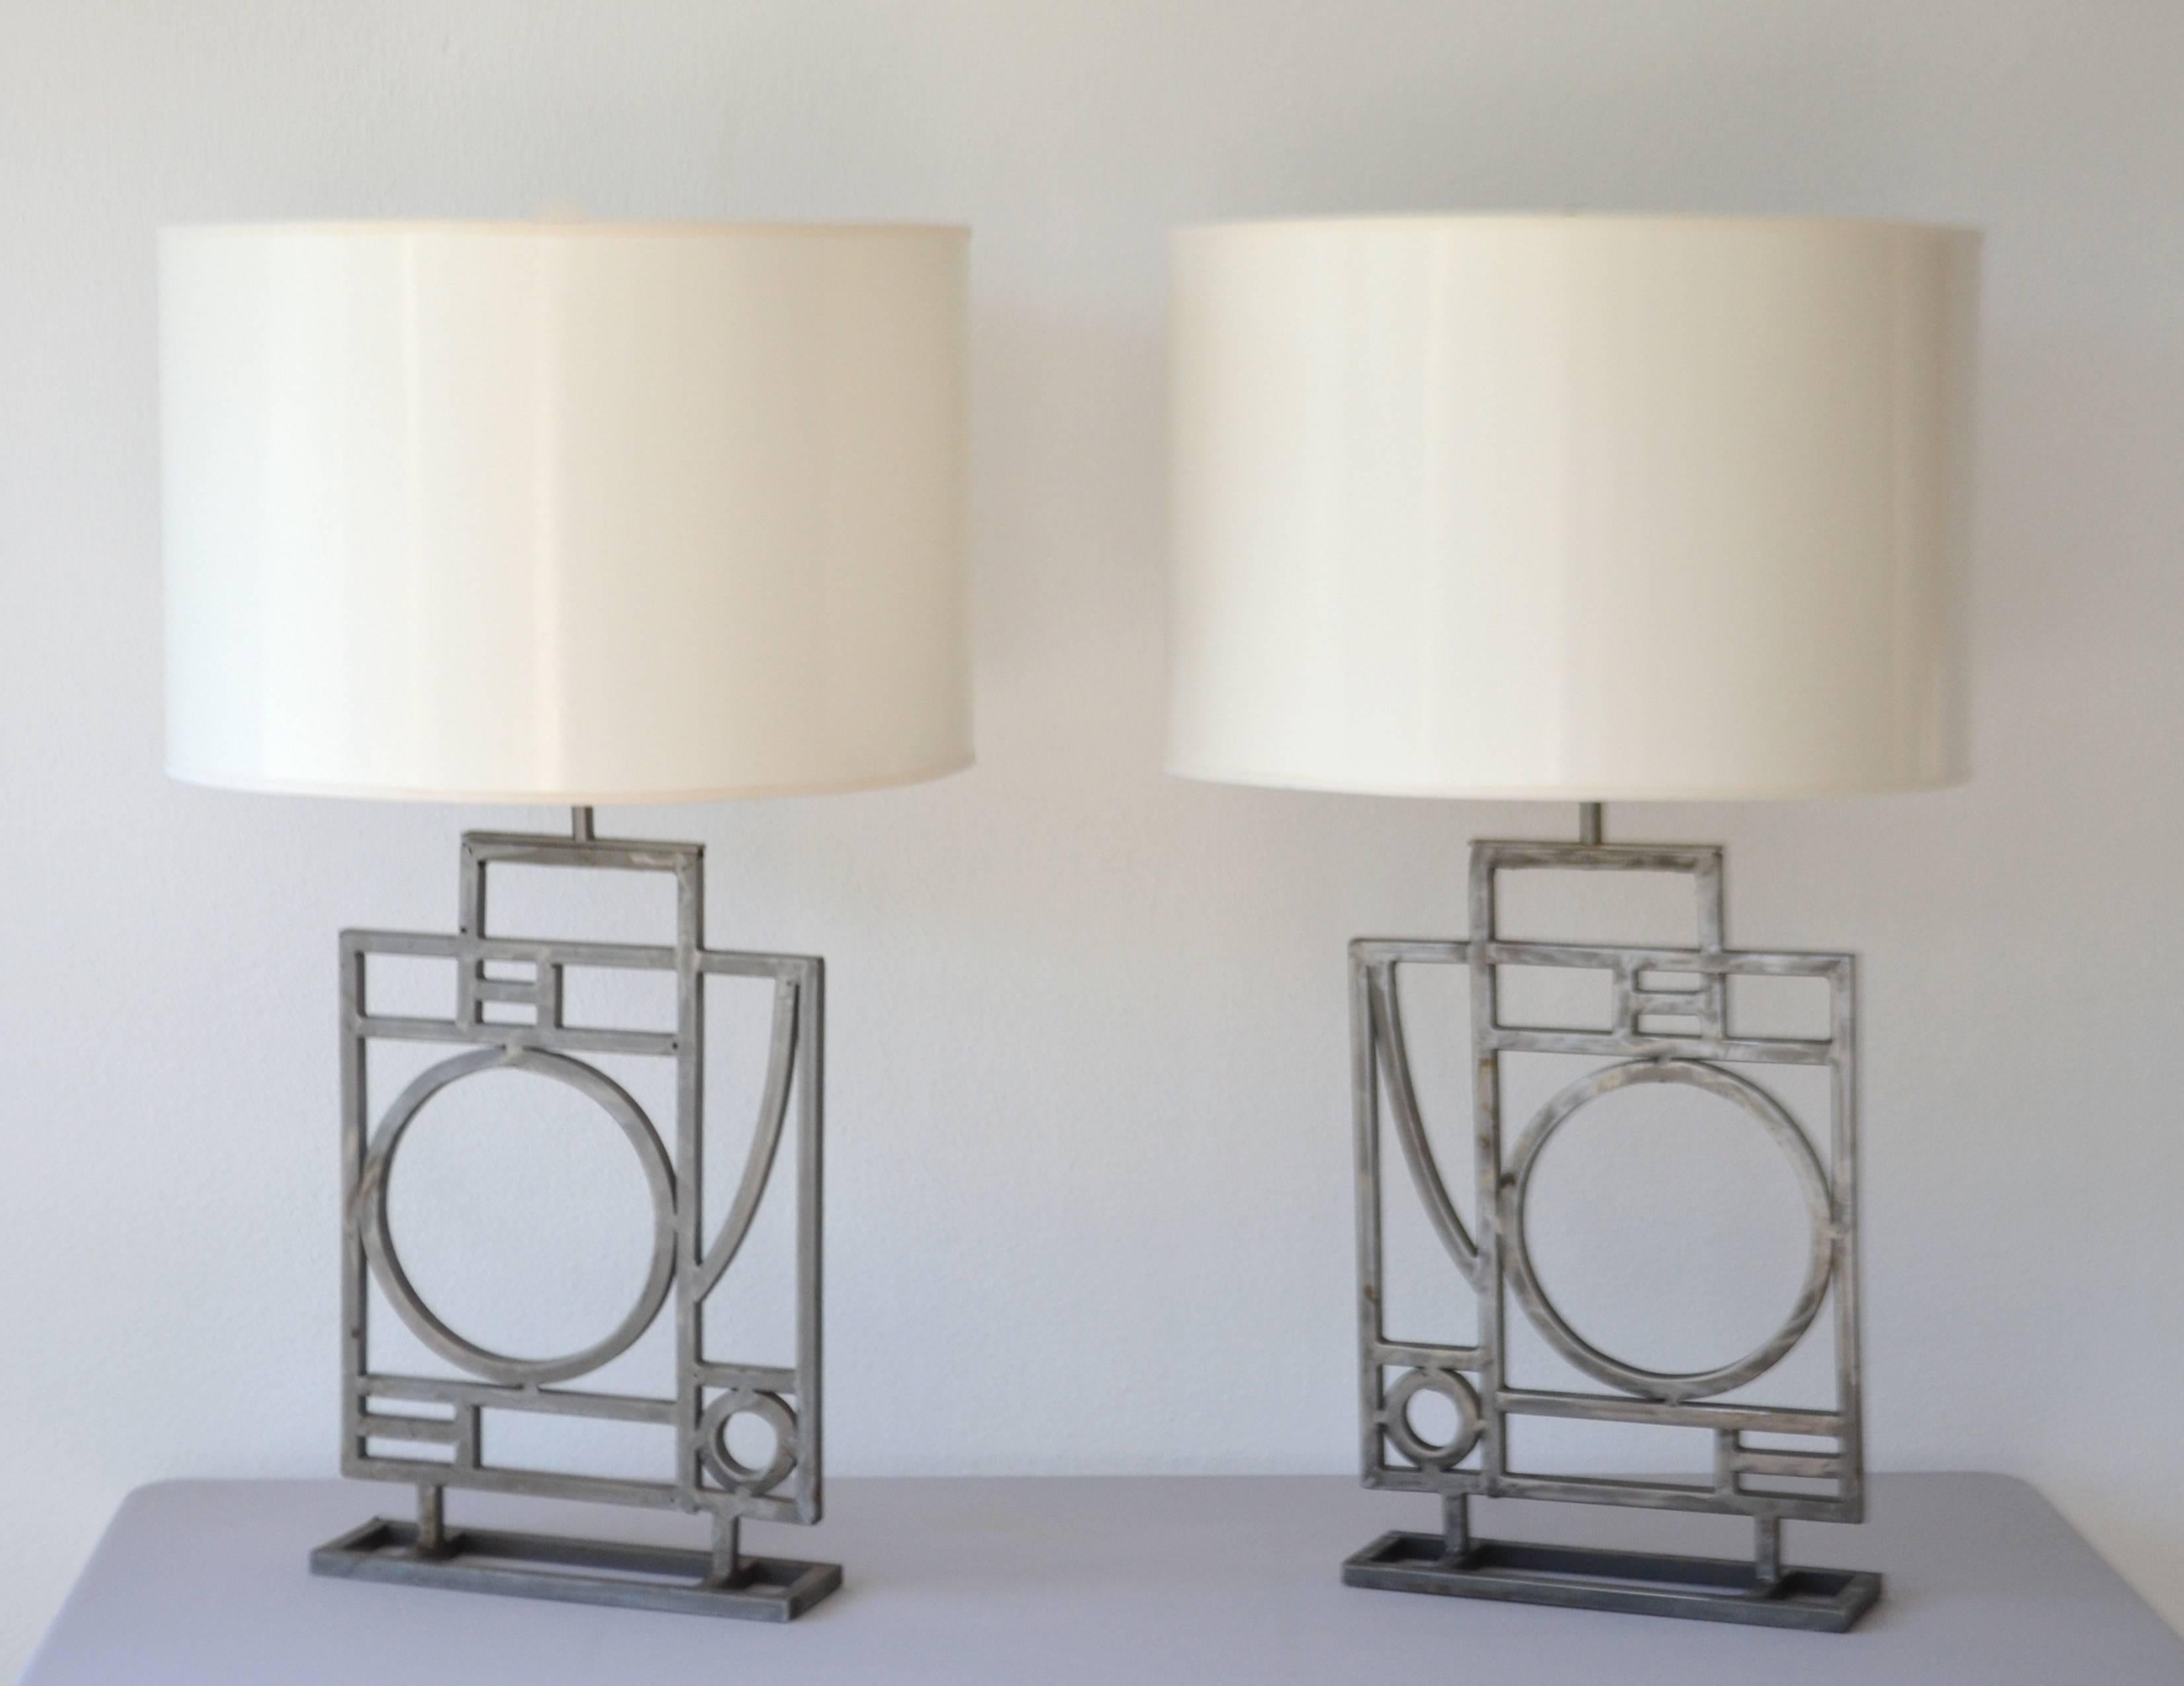 Pair of Postmodern Geometrical Form Table Lamps by Robert Sonneman 2